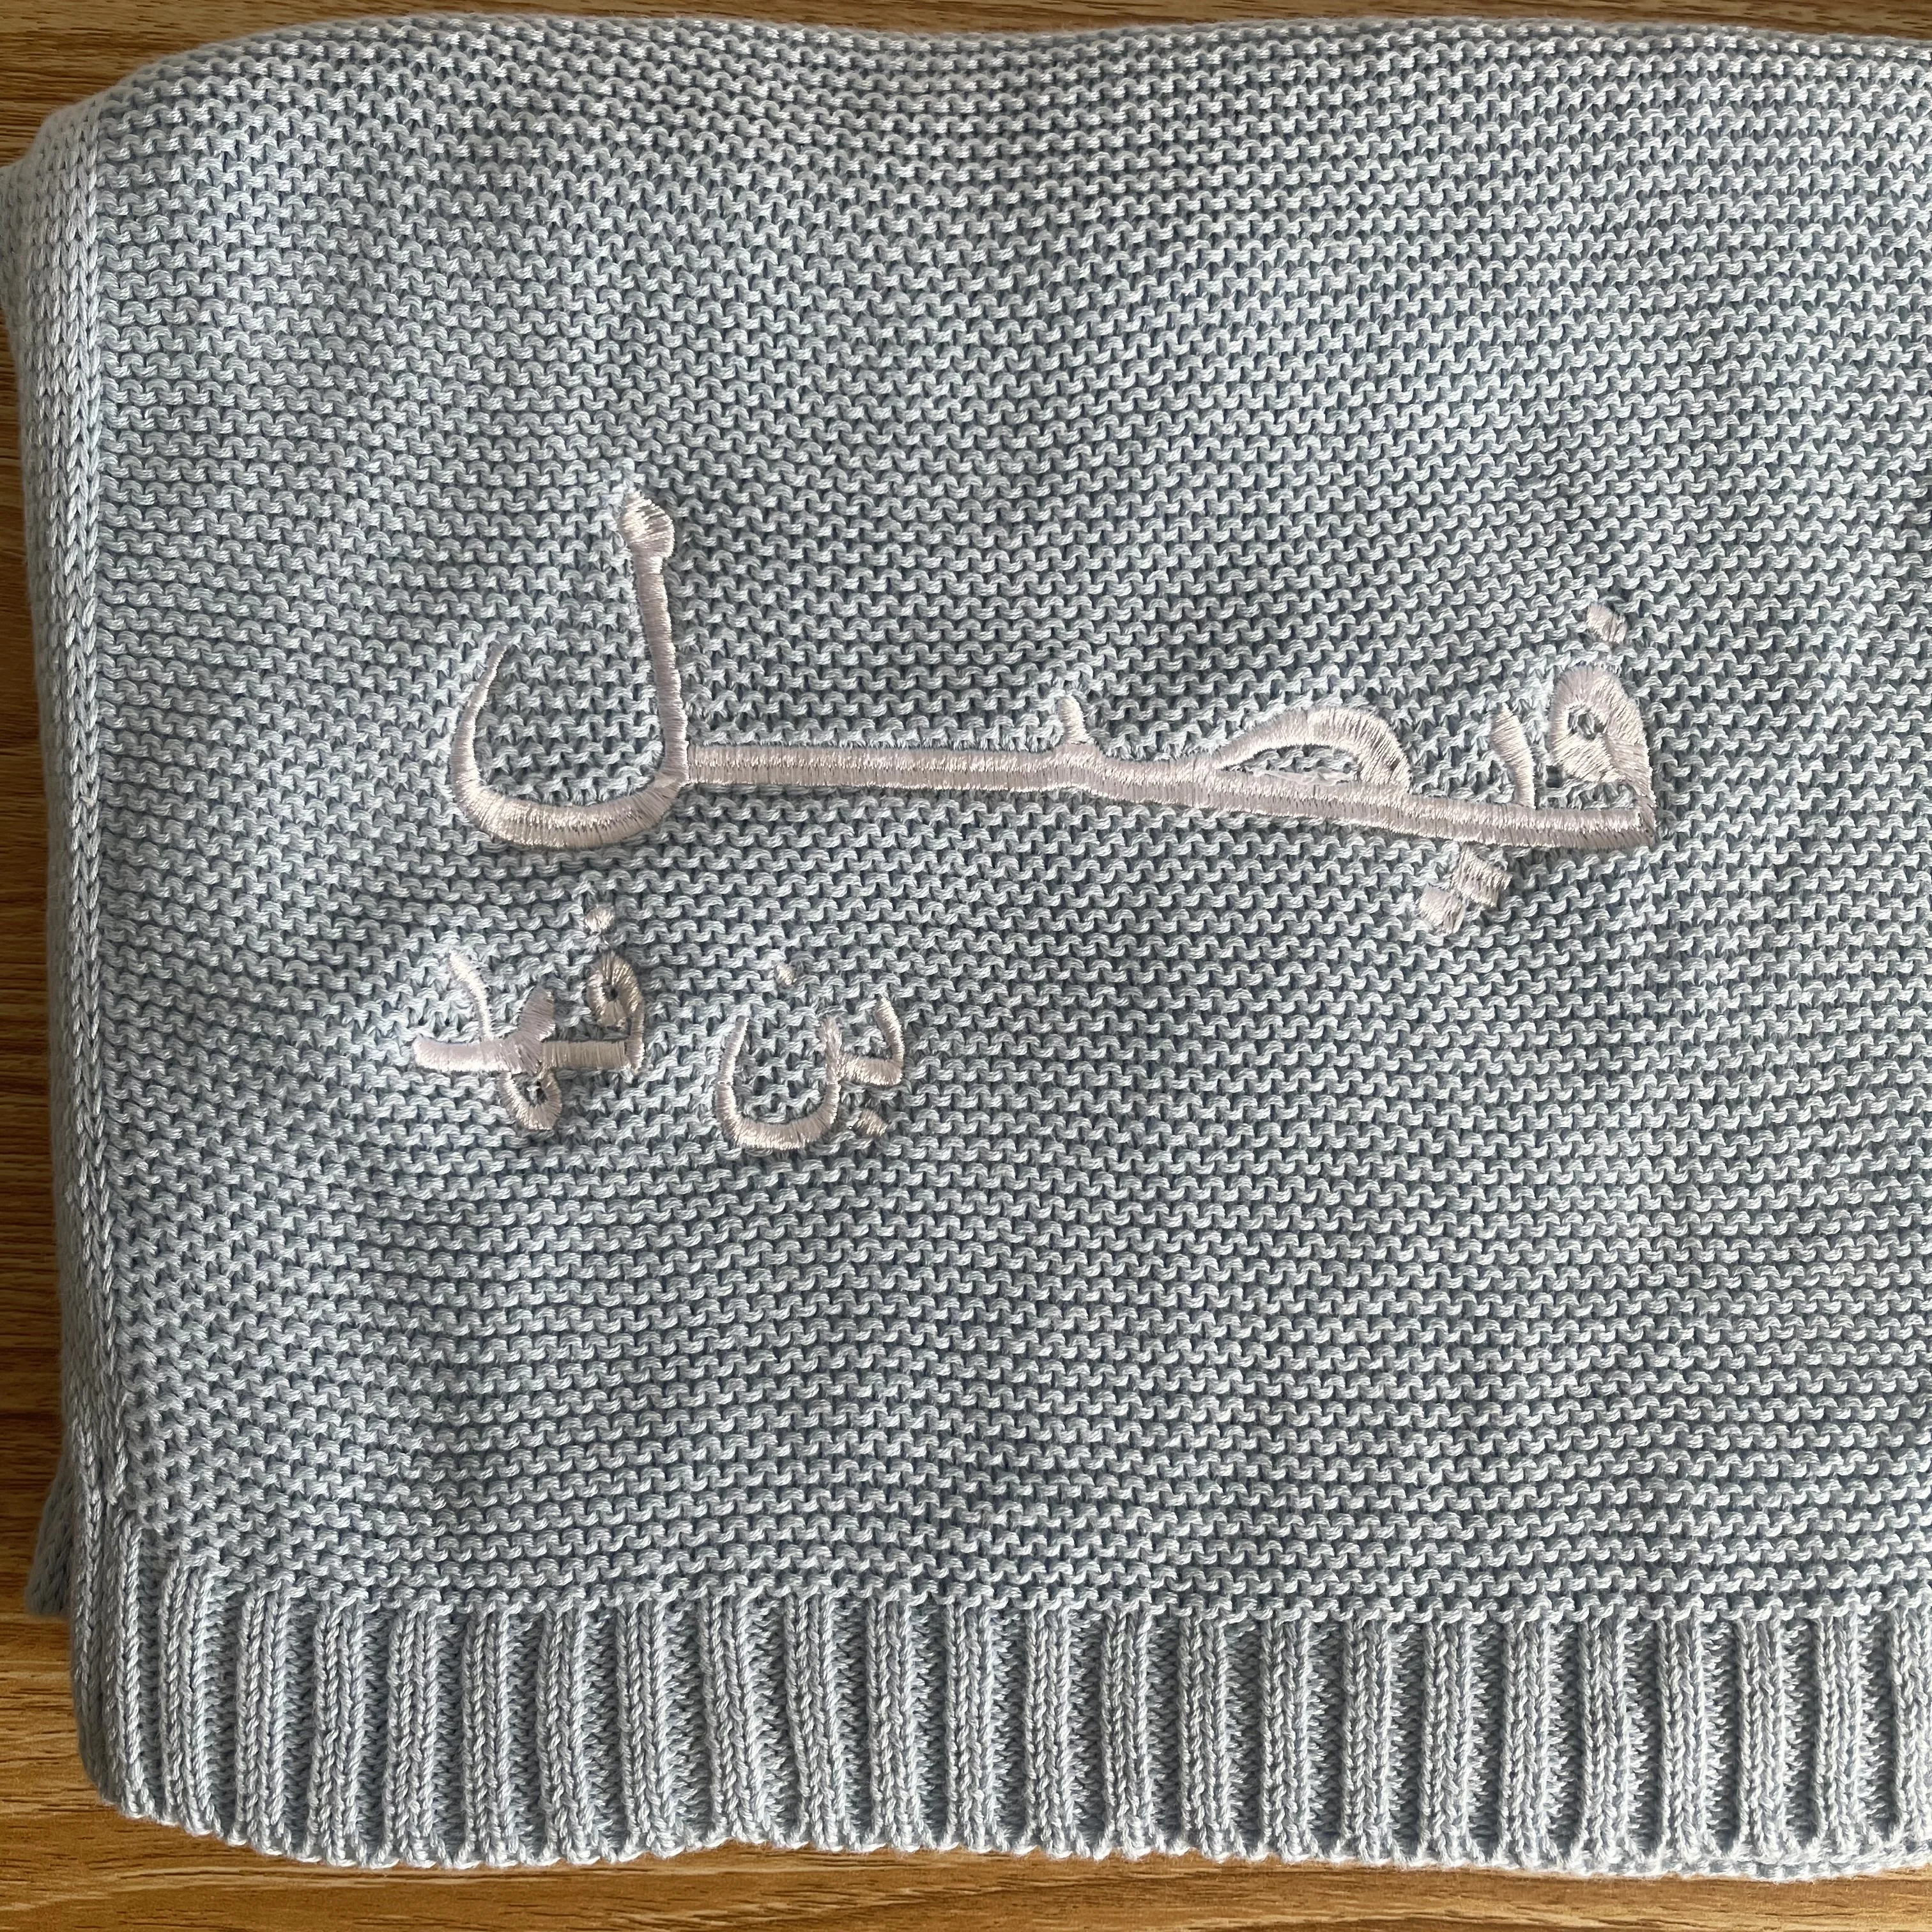 Cobertor árabe personalizado do bebê bordado, Cobertor de malha de algodão macio e respirável, Nome personalizado do bebê, Presente do chuveiro do bebê